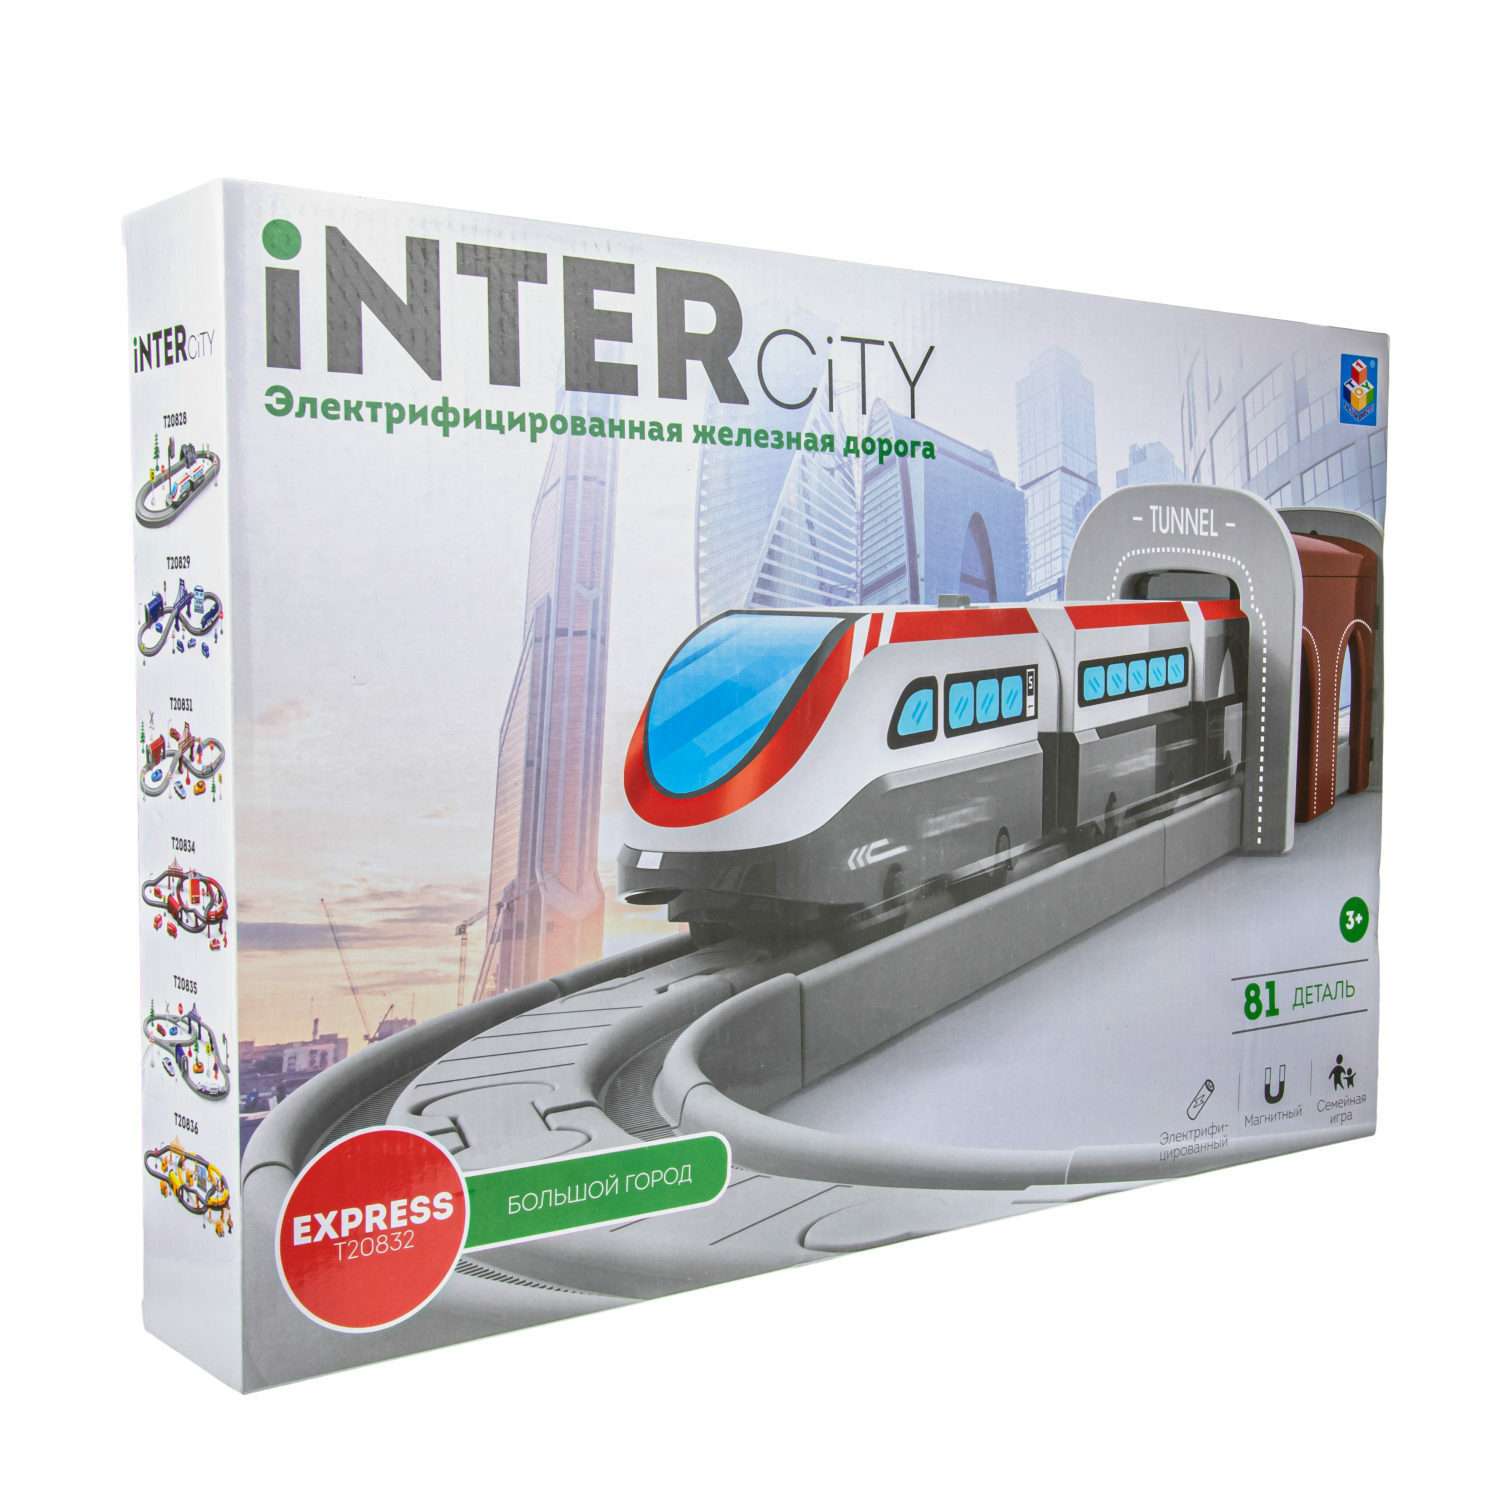 Игровой набор InterCity Железная дорога Большой город с поездом и аксессуарами Т20832 - фото 5